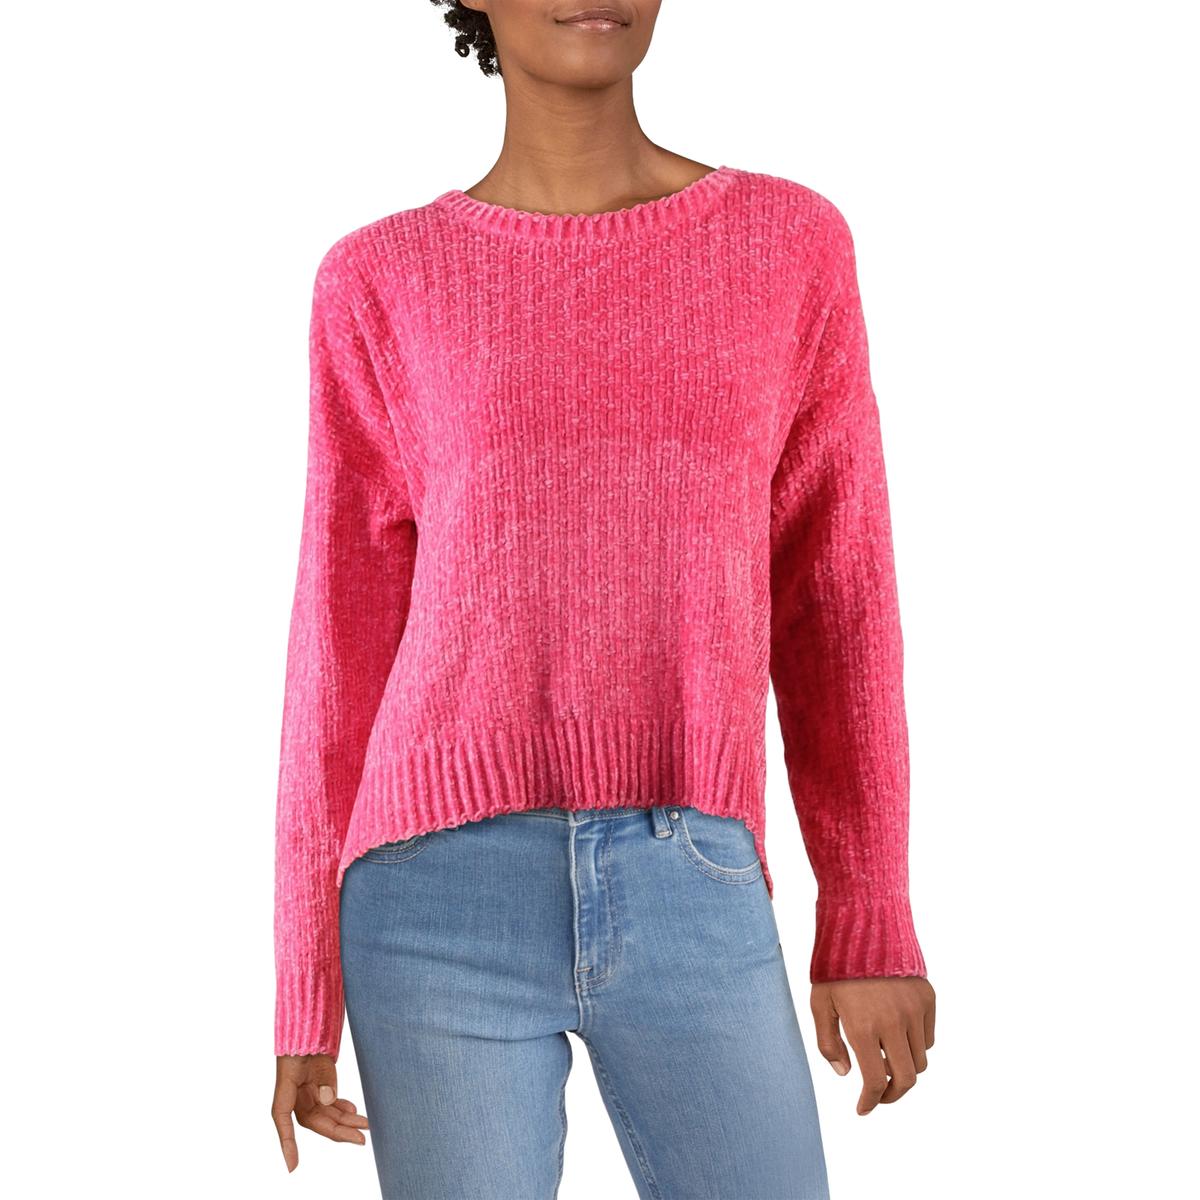 Cliche Womens Chenille Cropped Pullover Crewneck Sweater BHFO 5135 | eBay